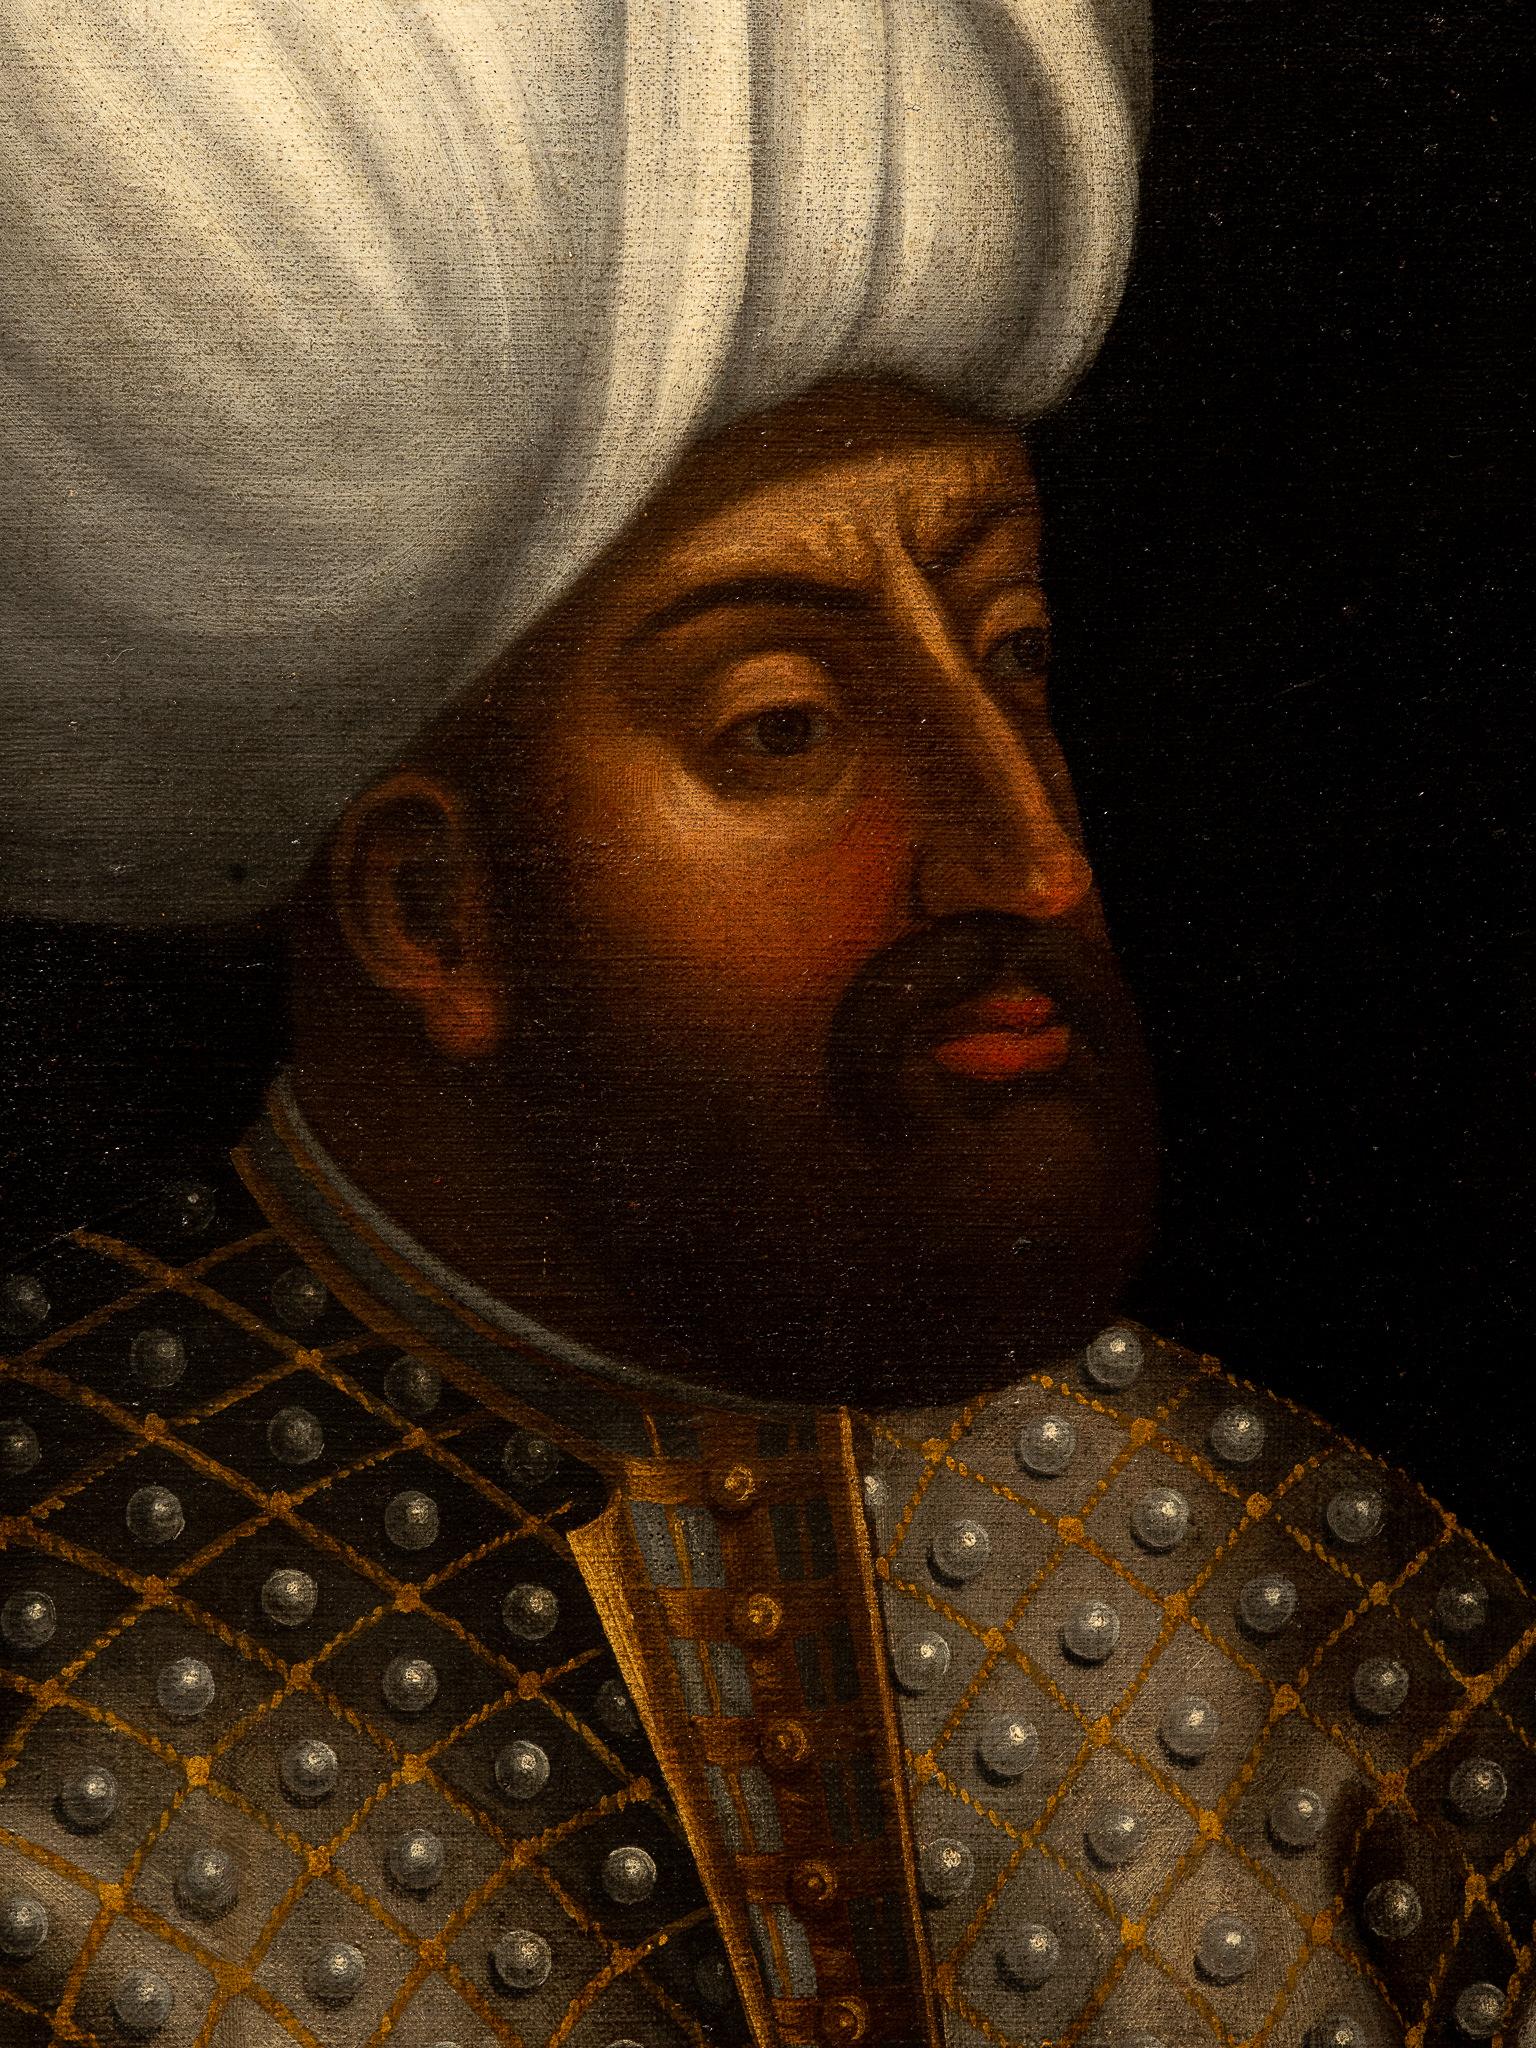 ottoman empire in the 16th century